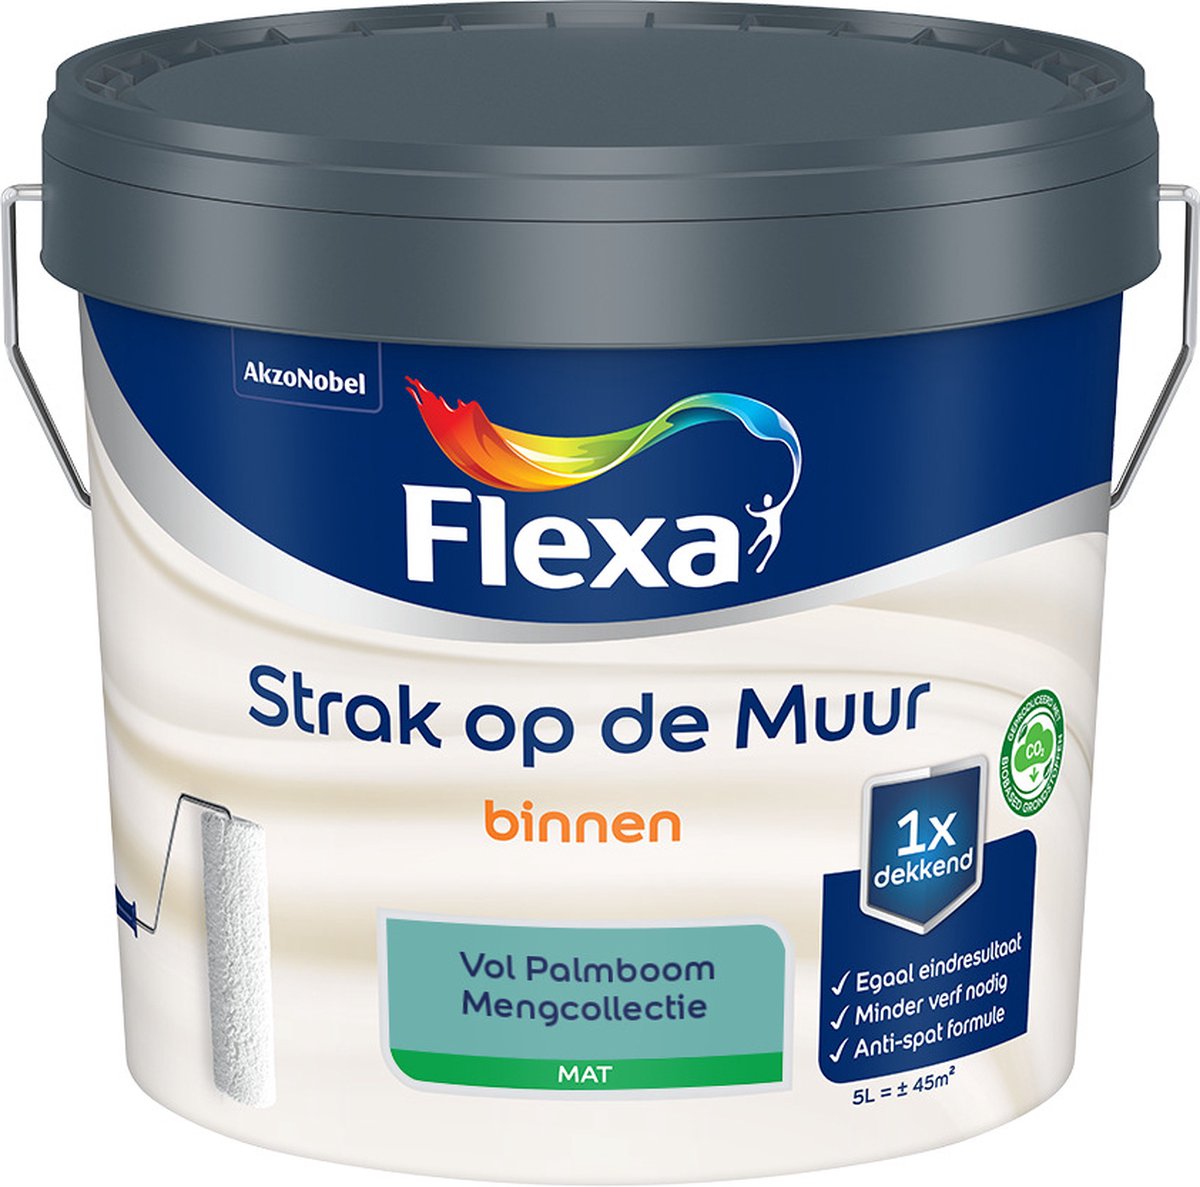 Flexa - Strak op de muur - Muurverf - Mengcollectie - Vol Palmboom - 5 Liter